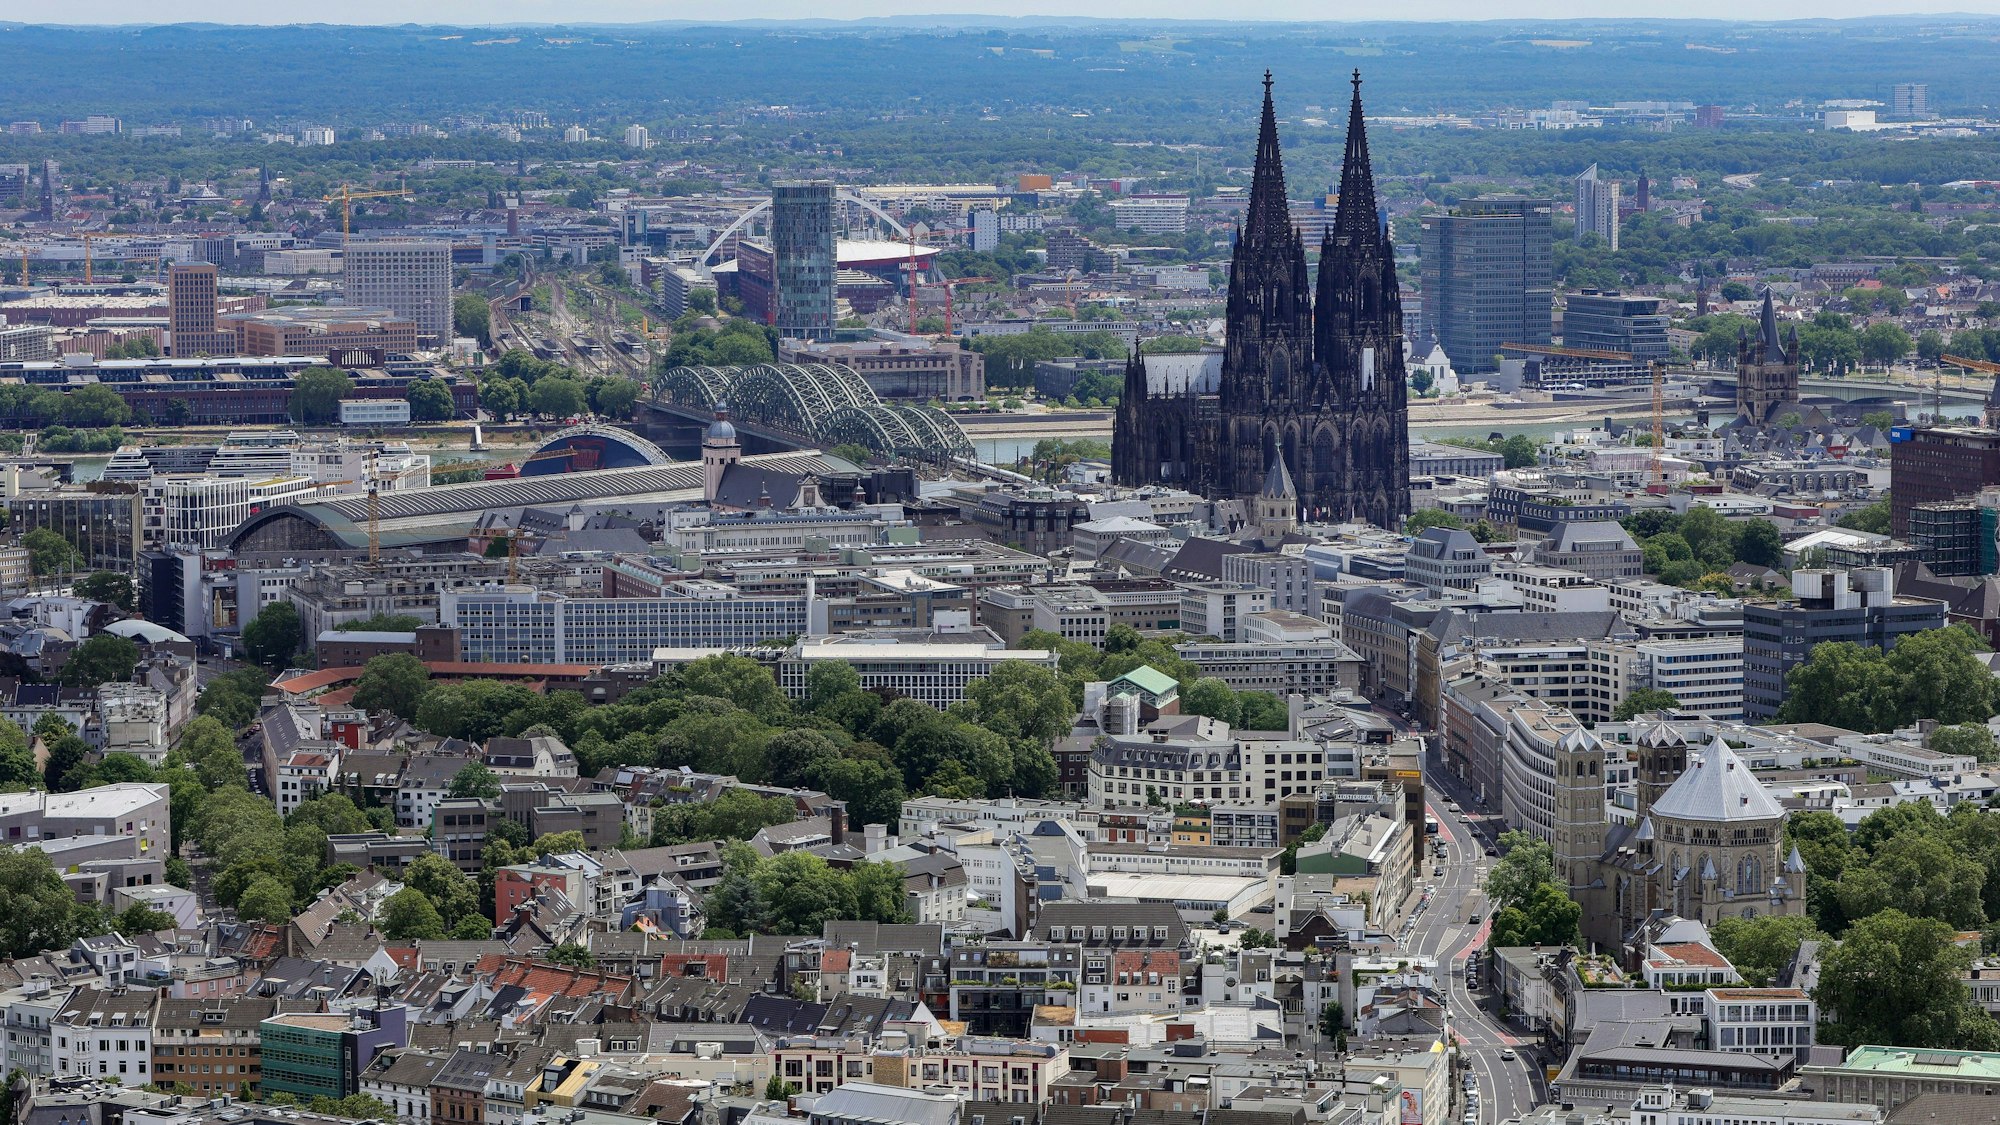 Der Blick auf Köln vom Colonius



